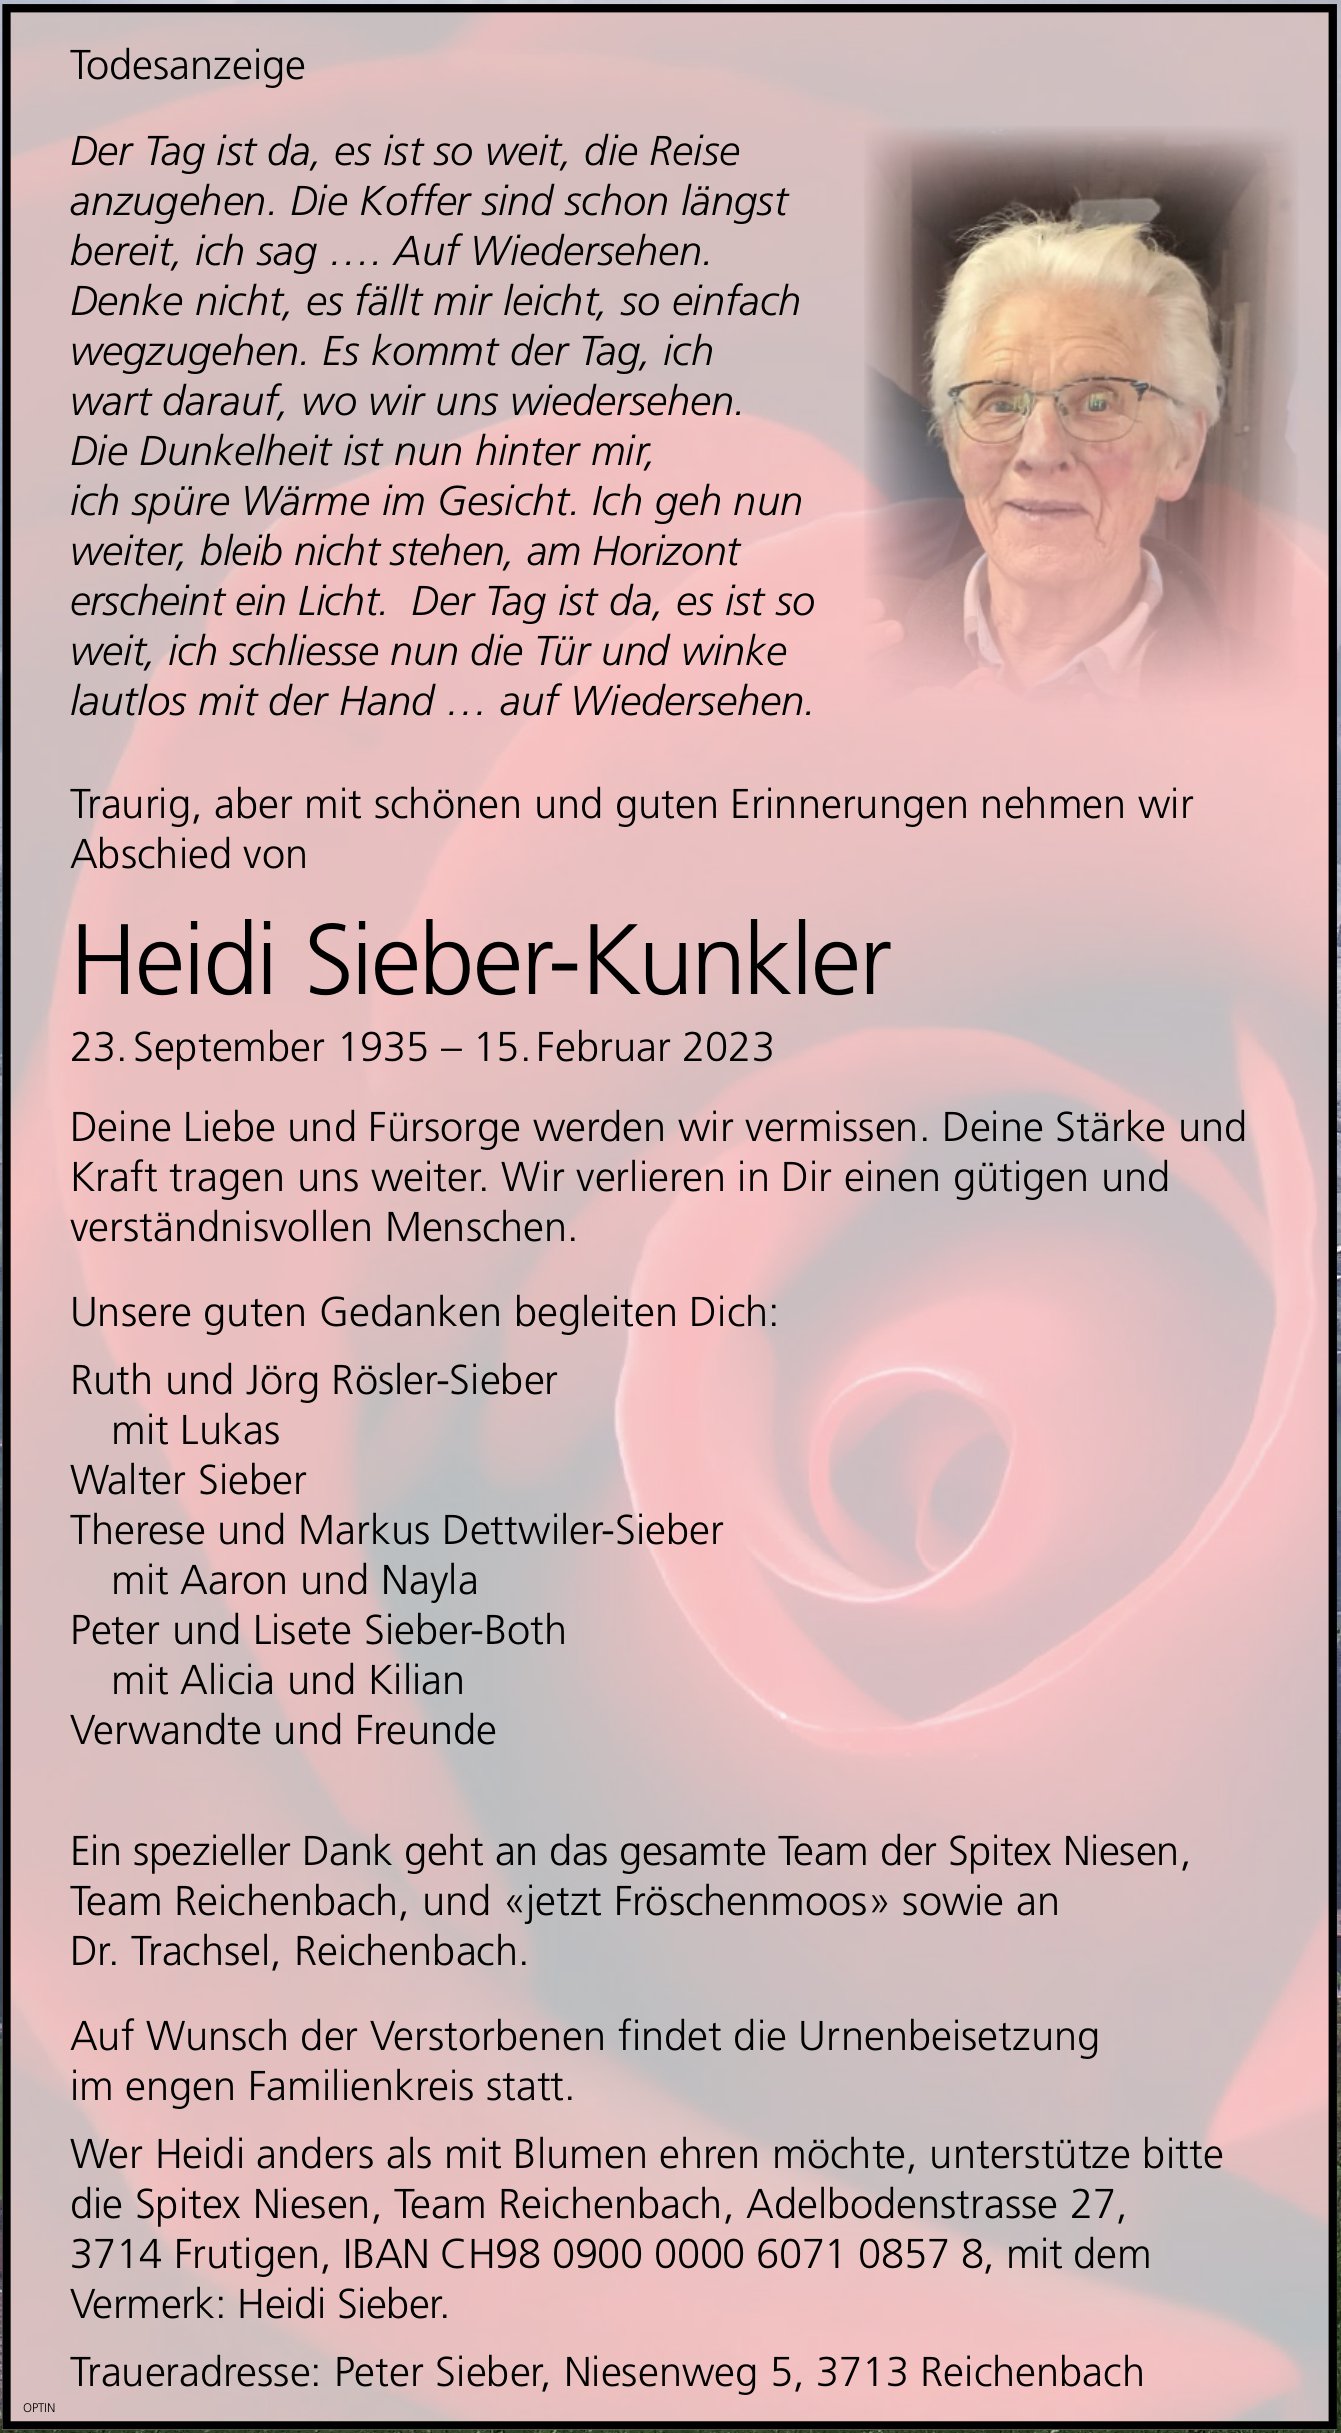 Heidi Sieber-Kunkler, Februar 2023 / TA